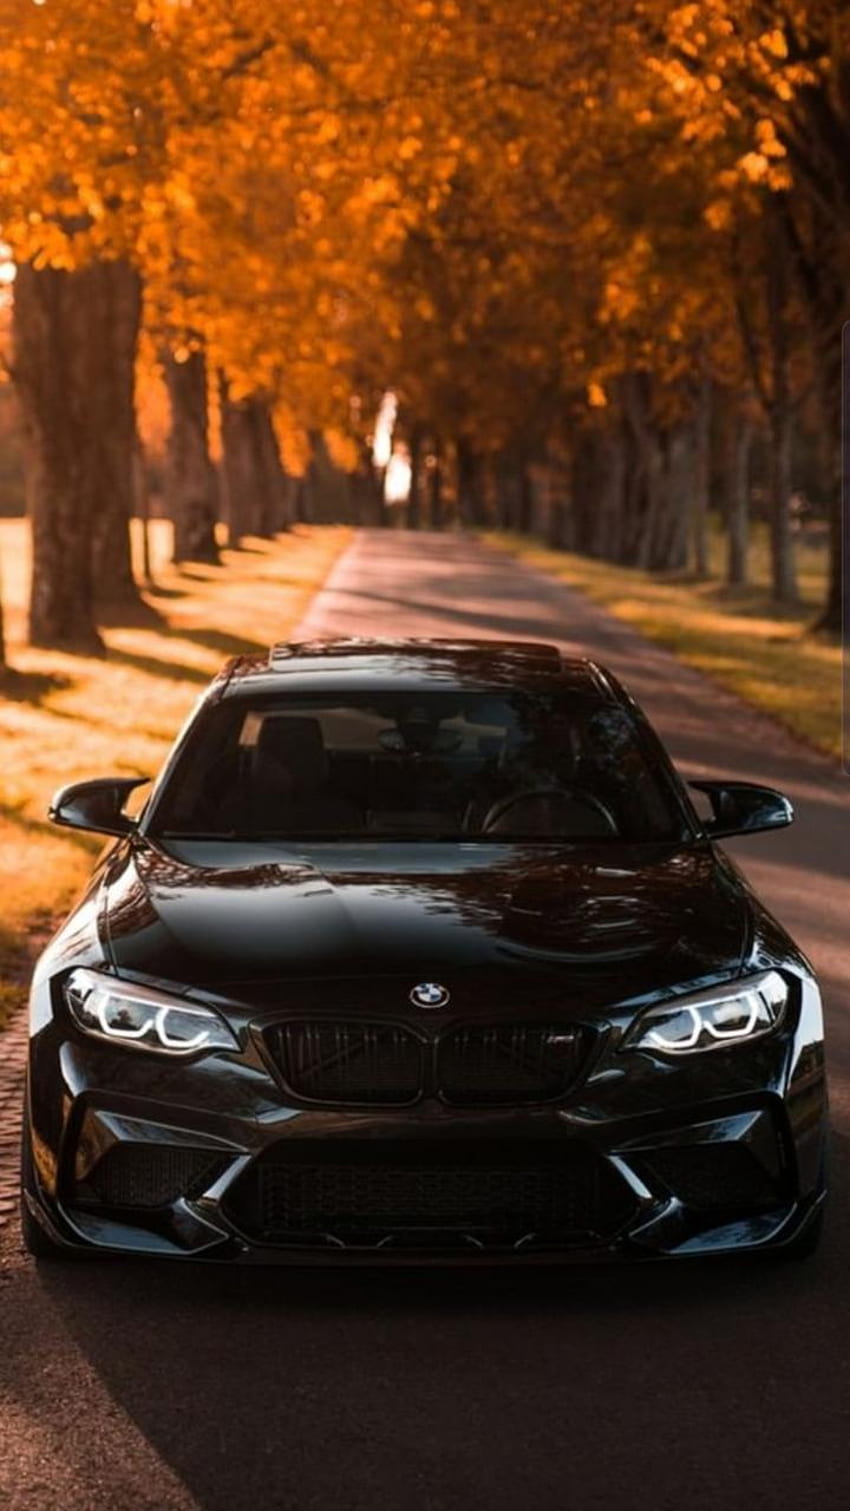 BMW, oświetlenie samochodowe, jesień, samochód Tapeta na telefon HD